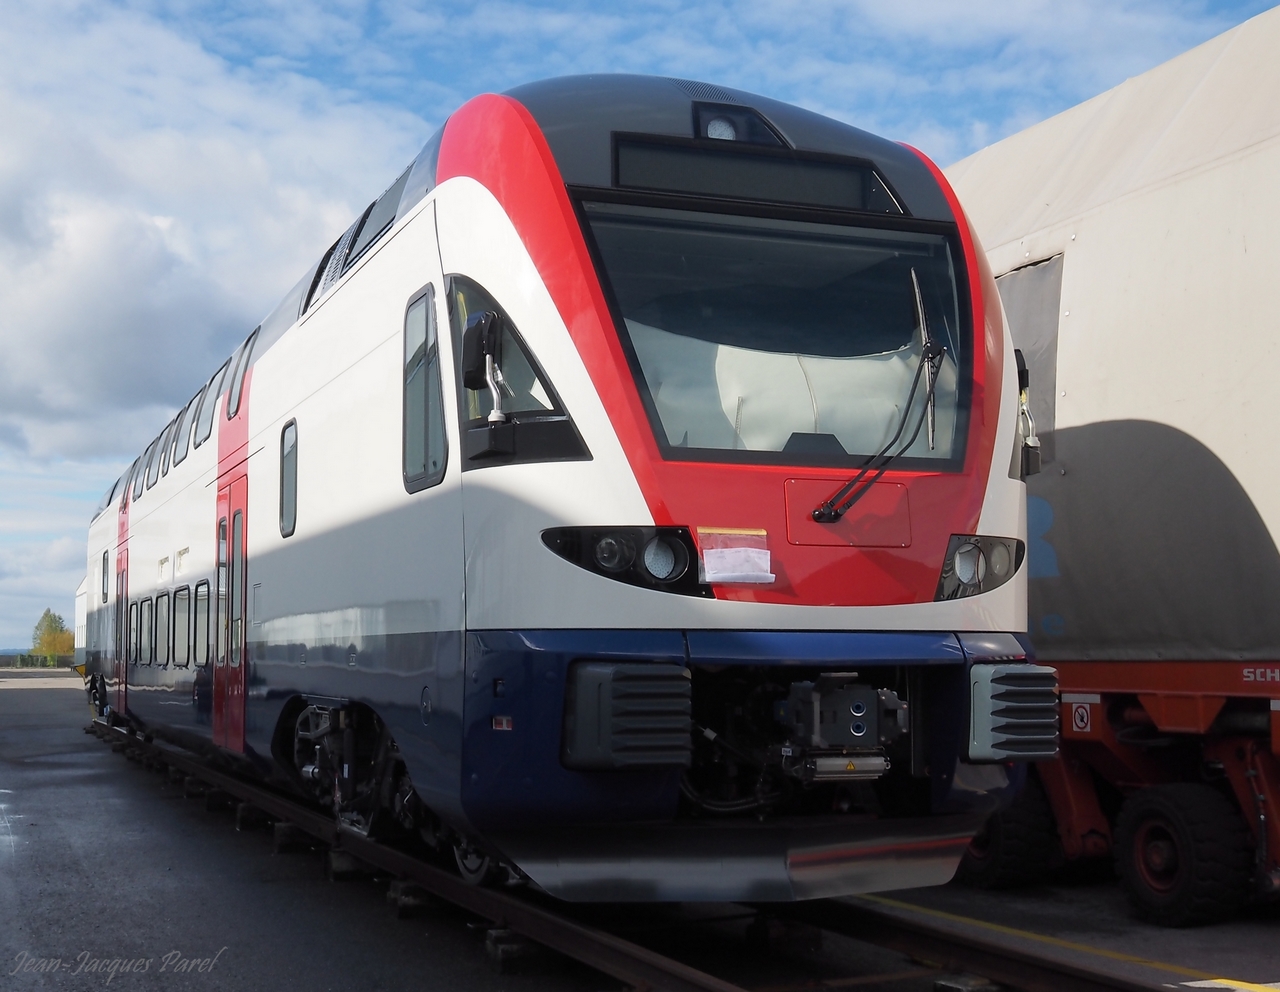 Visite chez Stadler, fabricant suisse de matériel ferroviaire, le 5.10.2015 à Altenrhein (SG/Suisse) 05_stadler03b1280-510bf9b